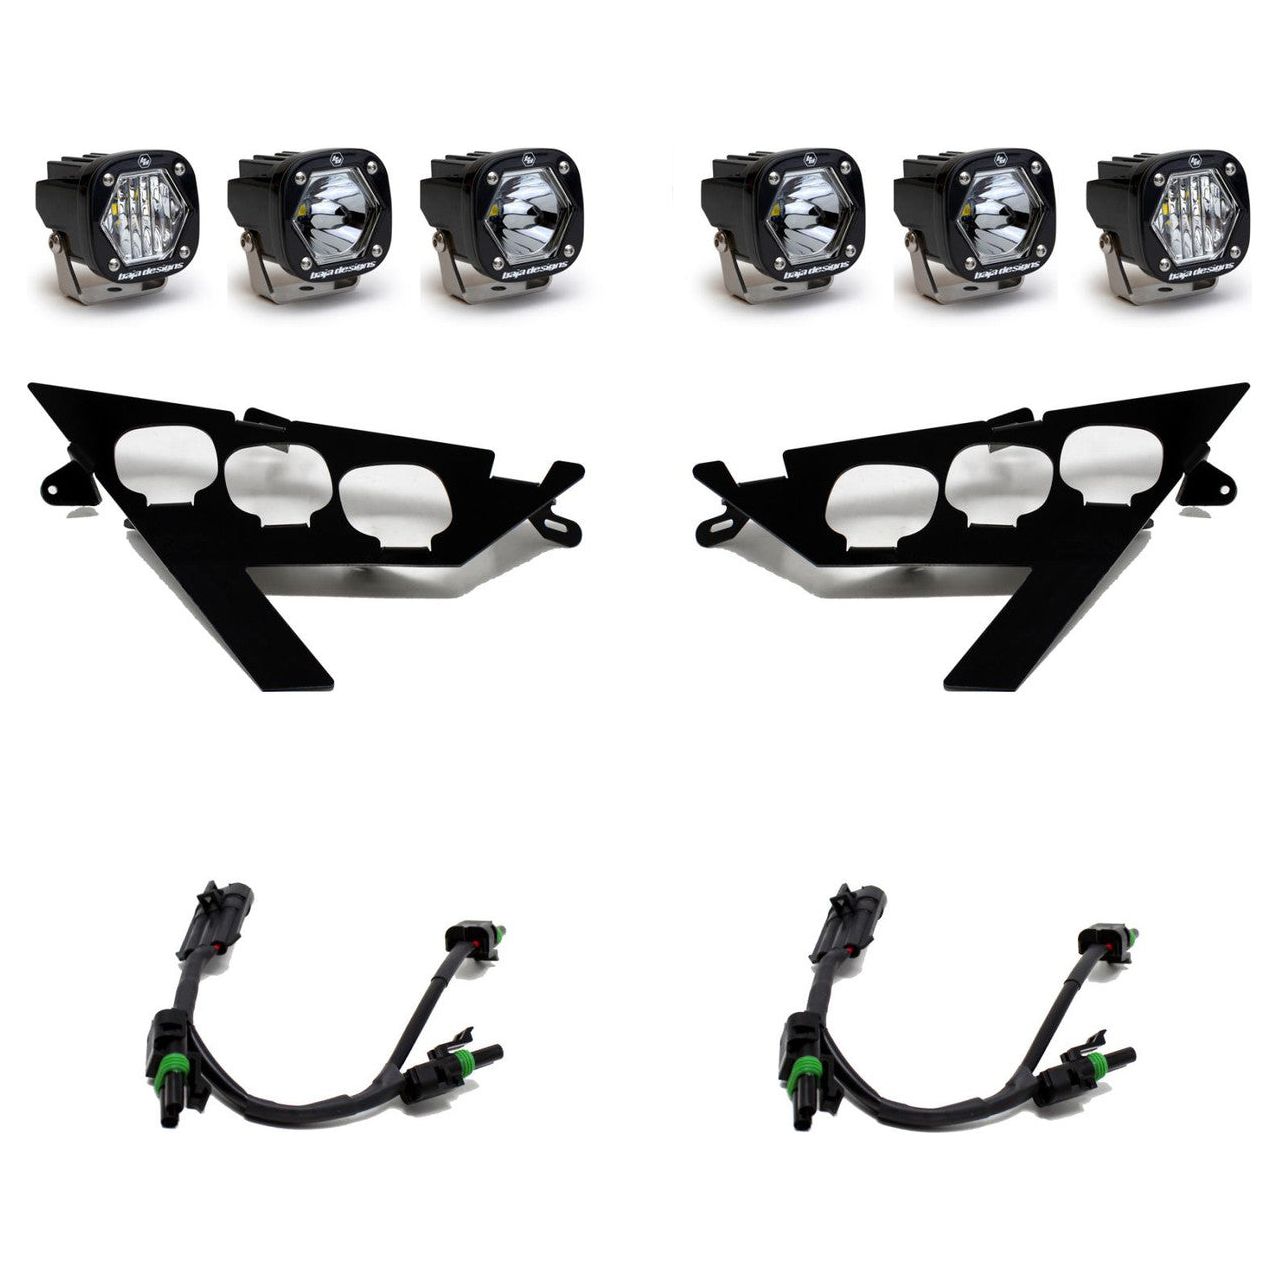 Polaris RZR Pro / Turbo R S1 Triple LED/Laser Headlight Kit | Baja Designs